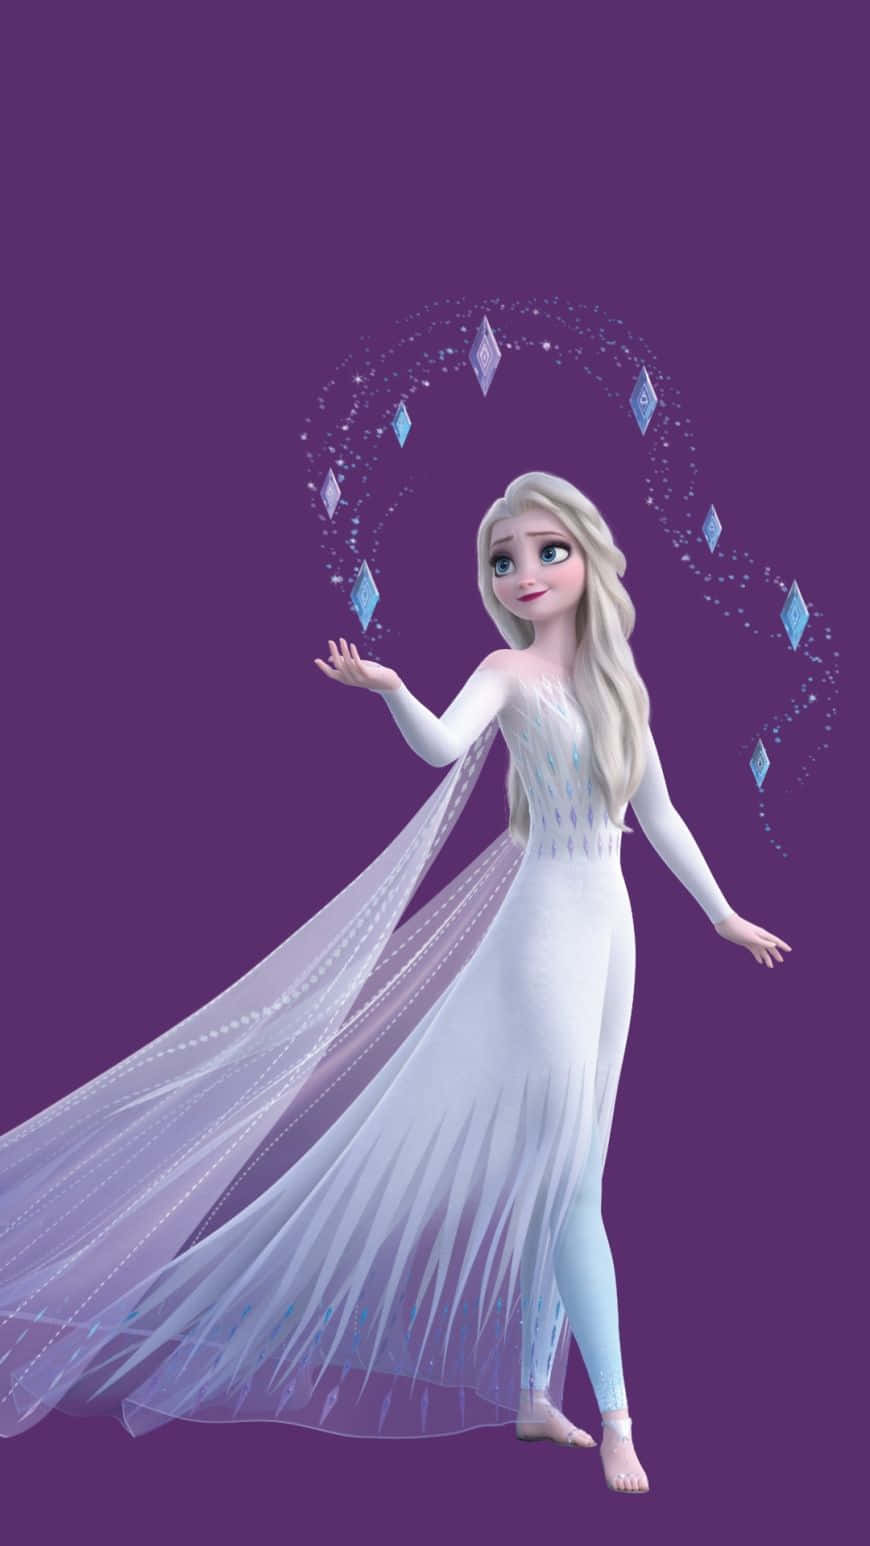 Anna's søster, Elsa, smuk i hendes strålende hvide kjole fra Frozen 2 ud over den sne-dækkede landskab. Wallpaper